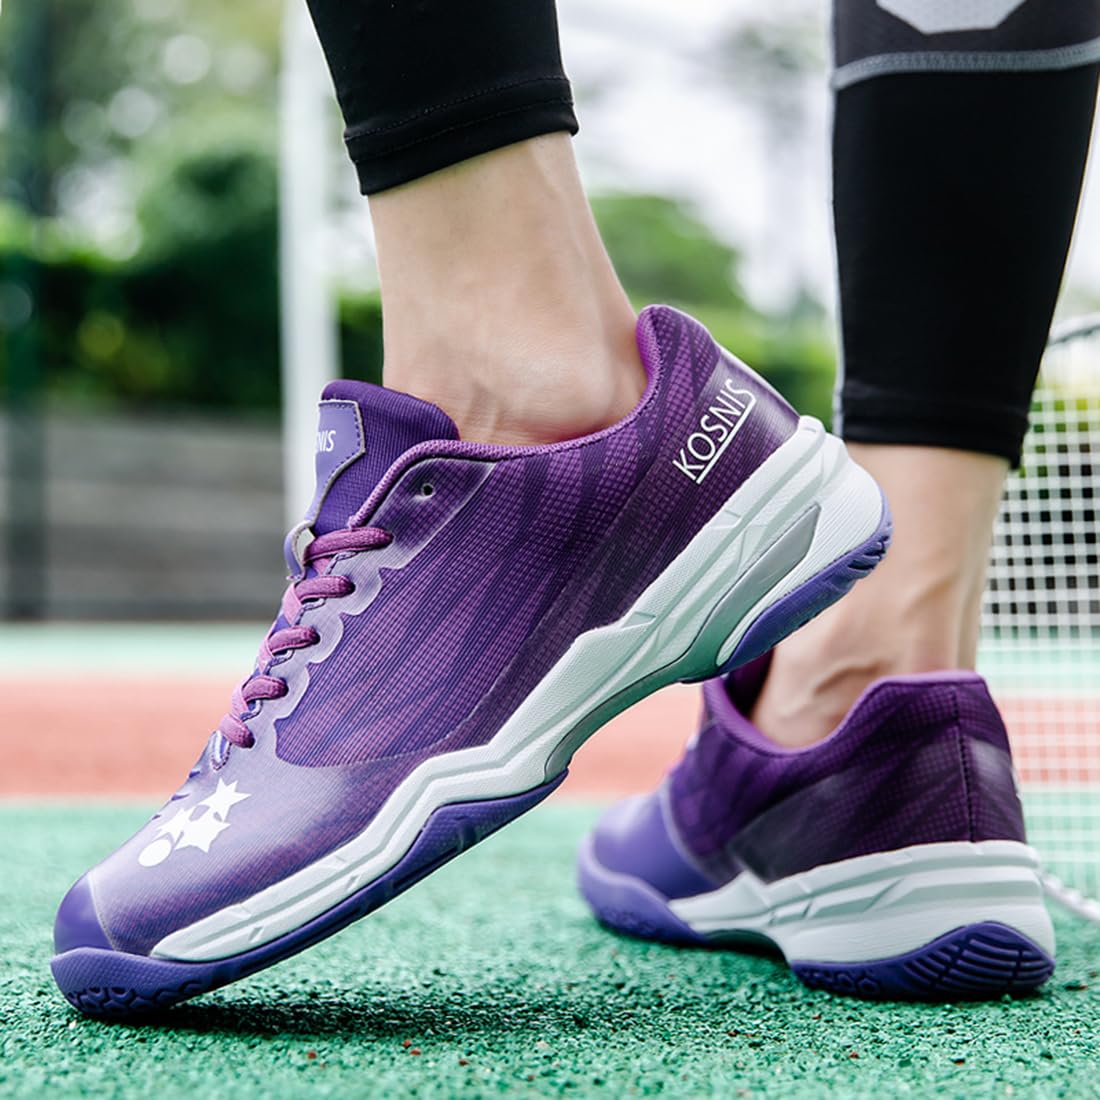 Migoldhot Women Tennis Shoes Durable Badminton Shoes Women Court Shoes Casual Pickleball Shoes Squash Shoes Purple